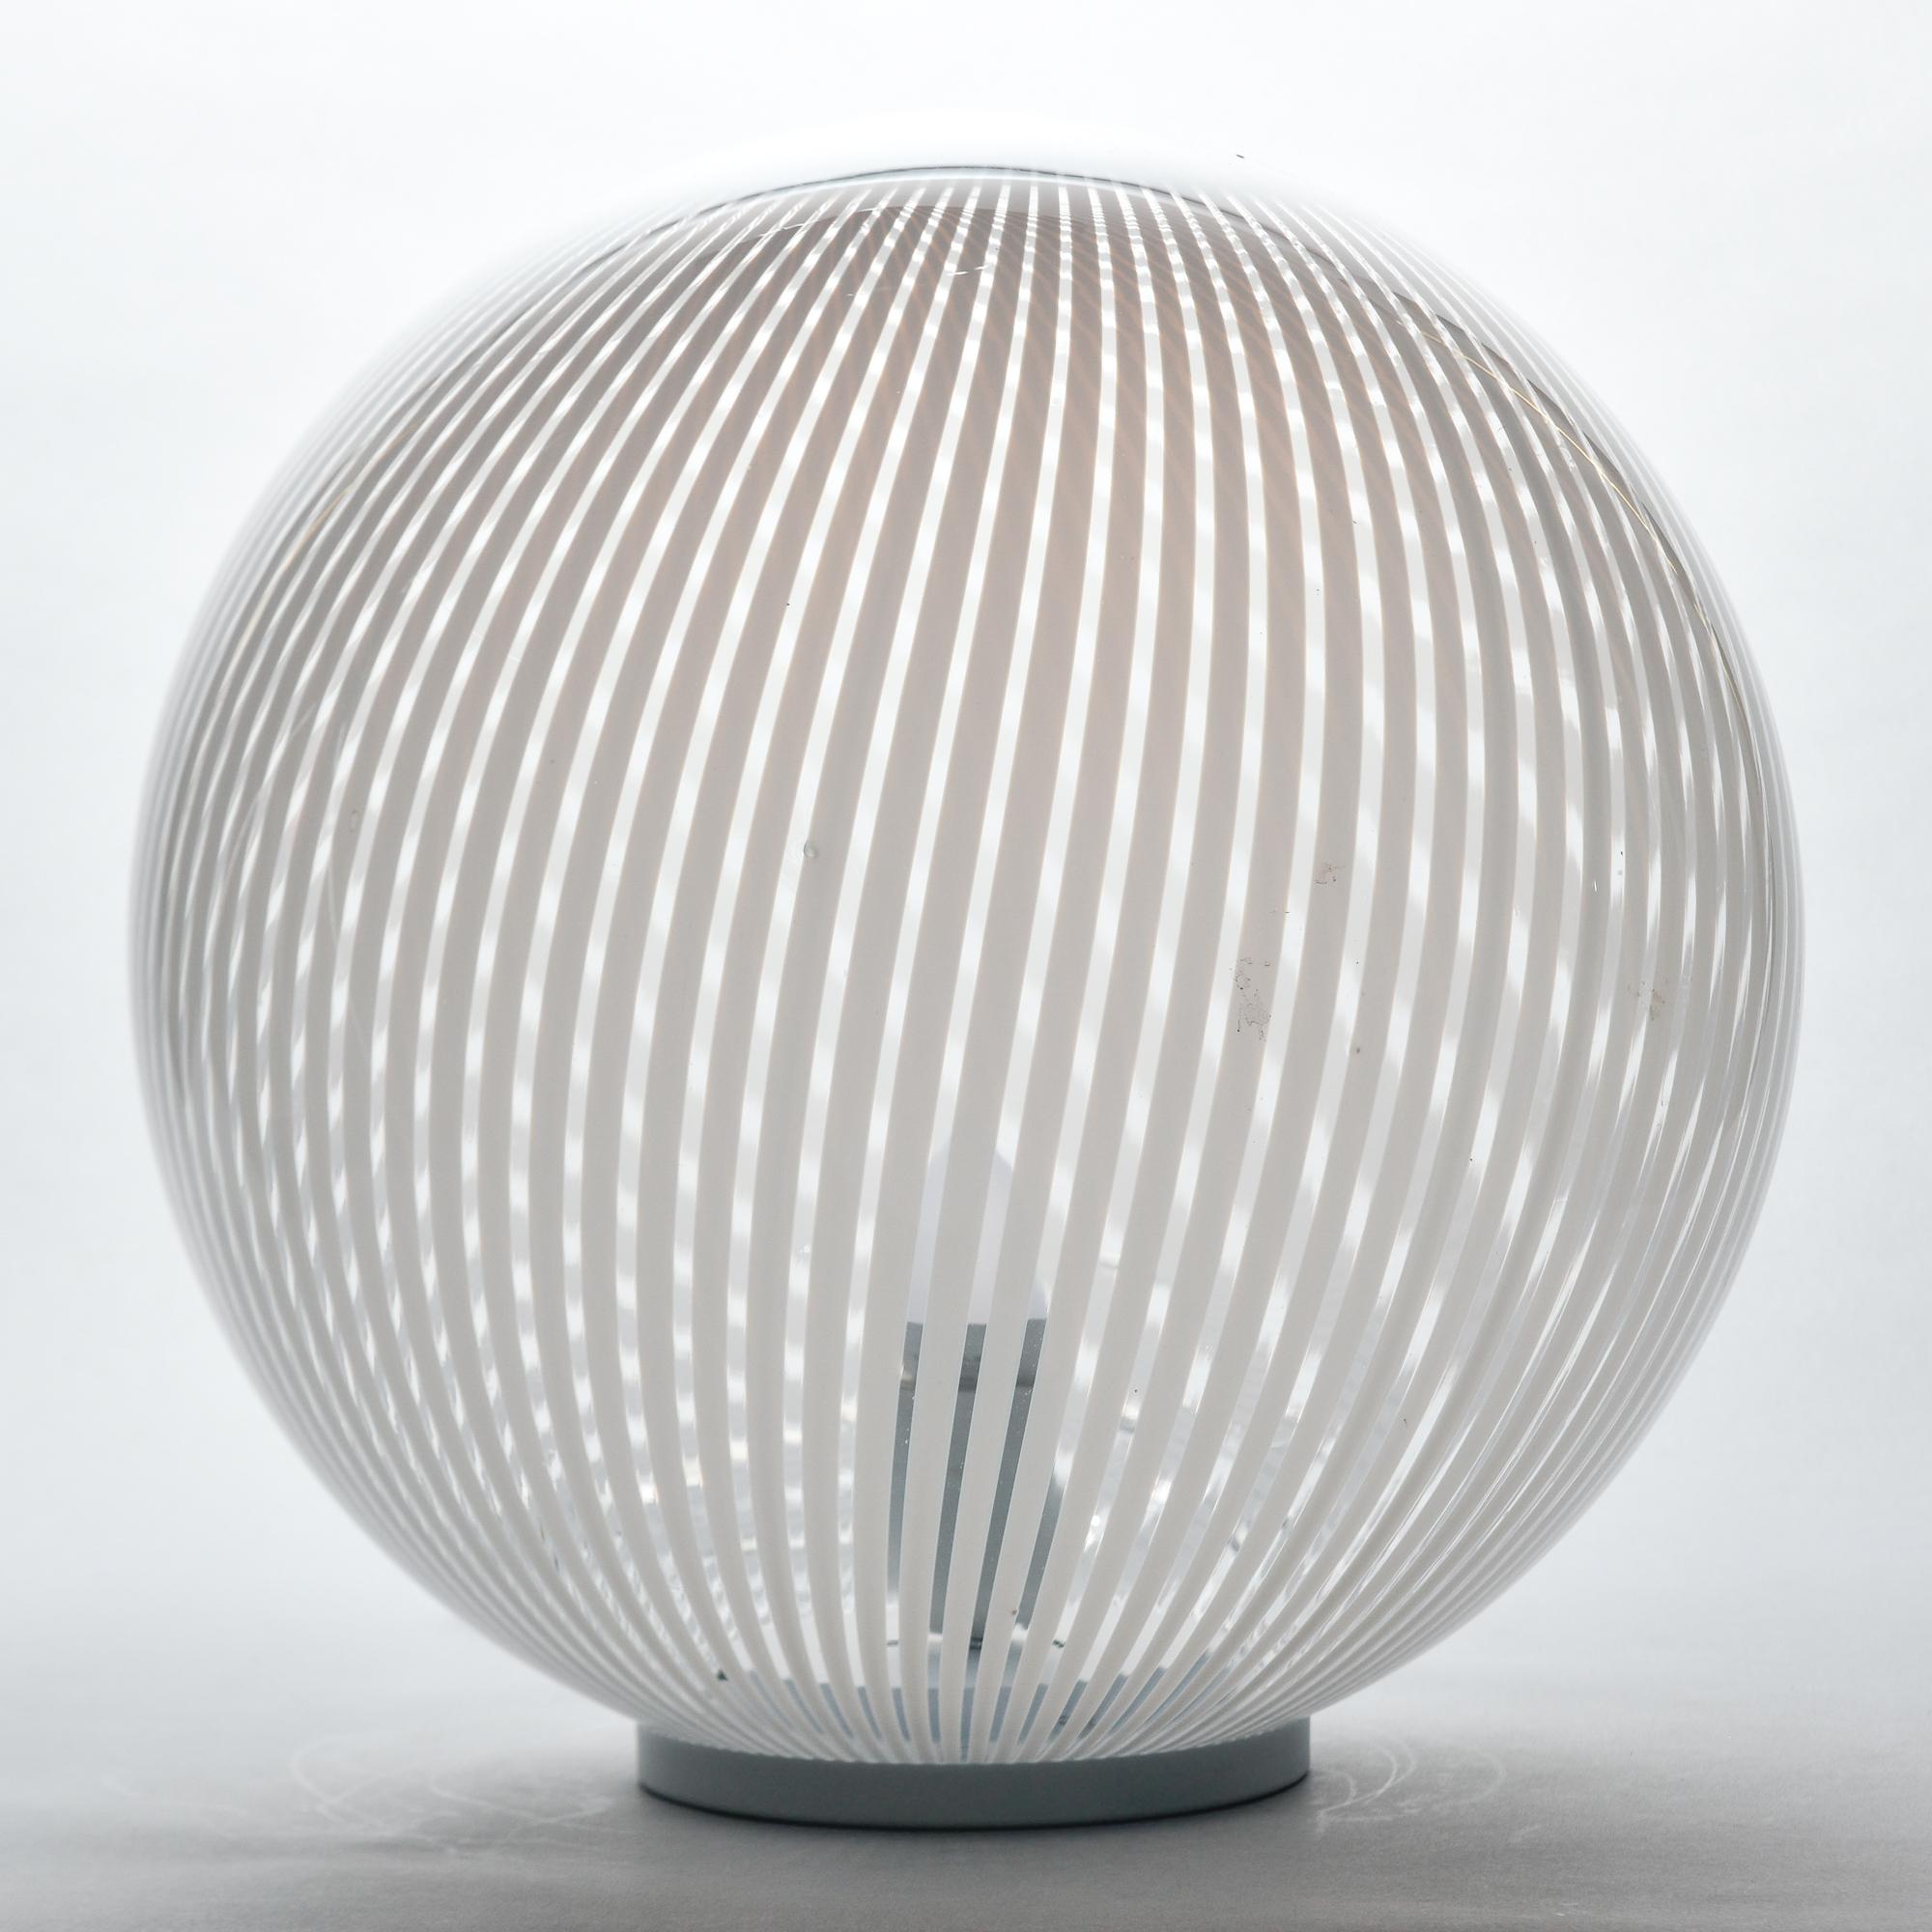 Trouvée en Italie, cette lampe de table datant de 1960 présente un grand globe en verre de Murano clair et blanc sur une base noire. Une prise interne de taille standard. Le câblage électrique a été mis à jour pour répondre aux normes américaines.